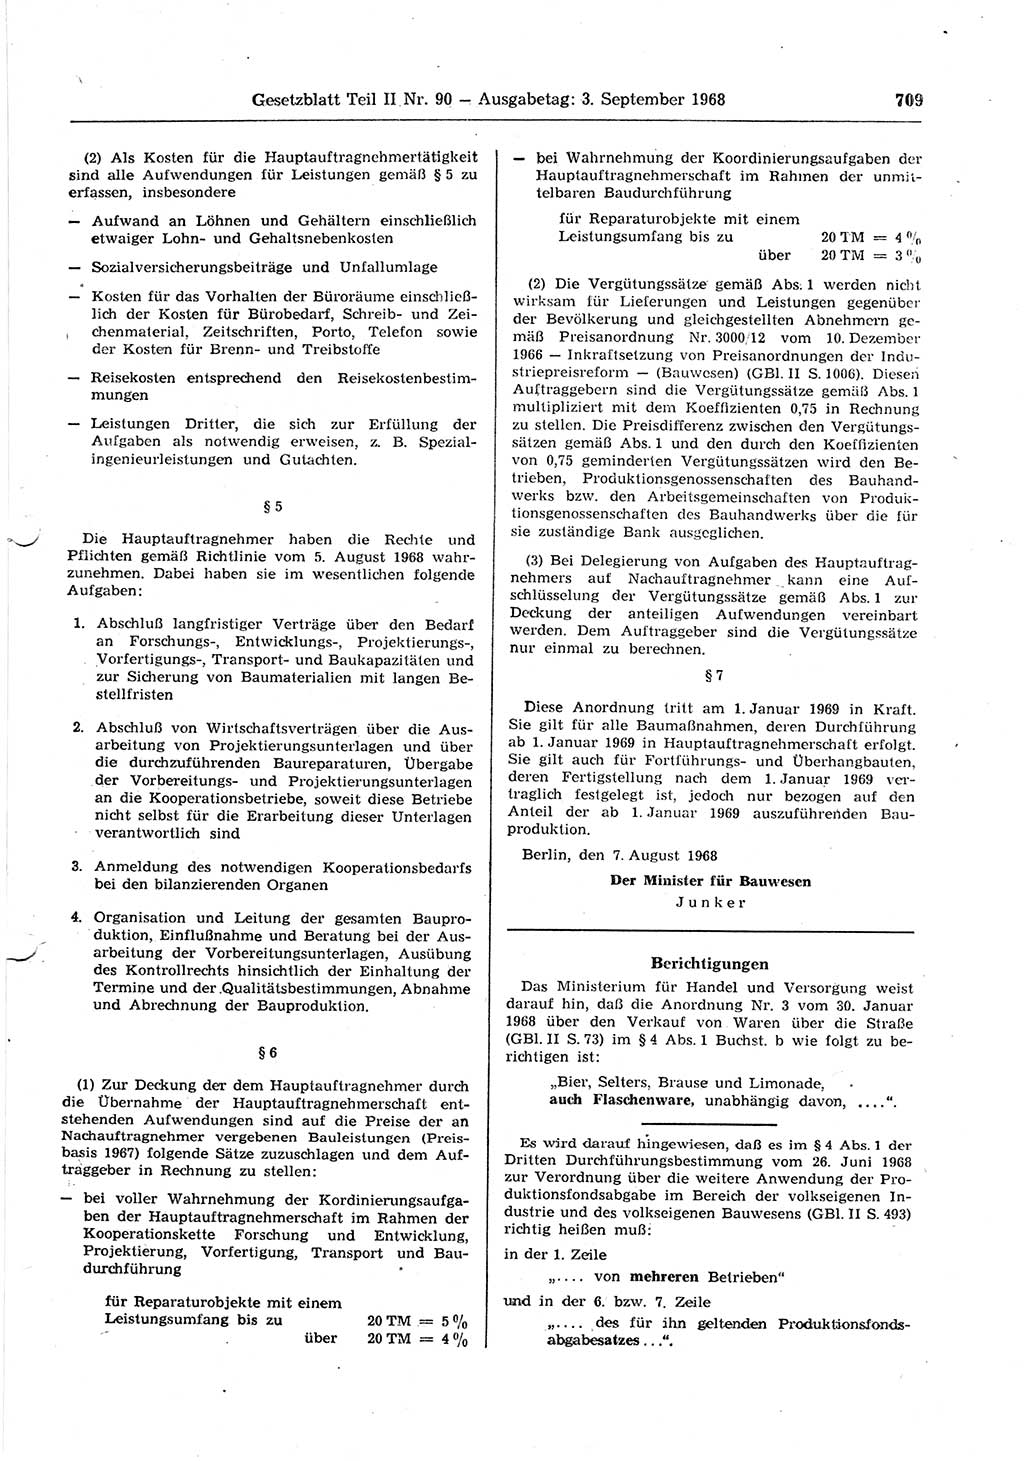 Gesetzblatt (GBl.) der Deutschen Demokratischen Republik (DDR) Teil ⅠⅠ 1968, Seite 709 (GBl. DDR ⅠⅠ 1968, S. 709)